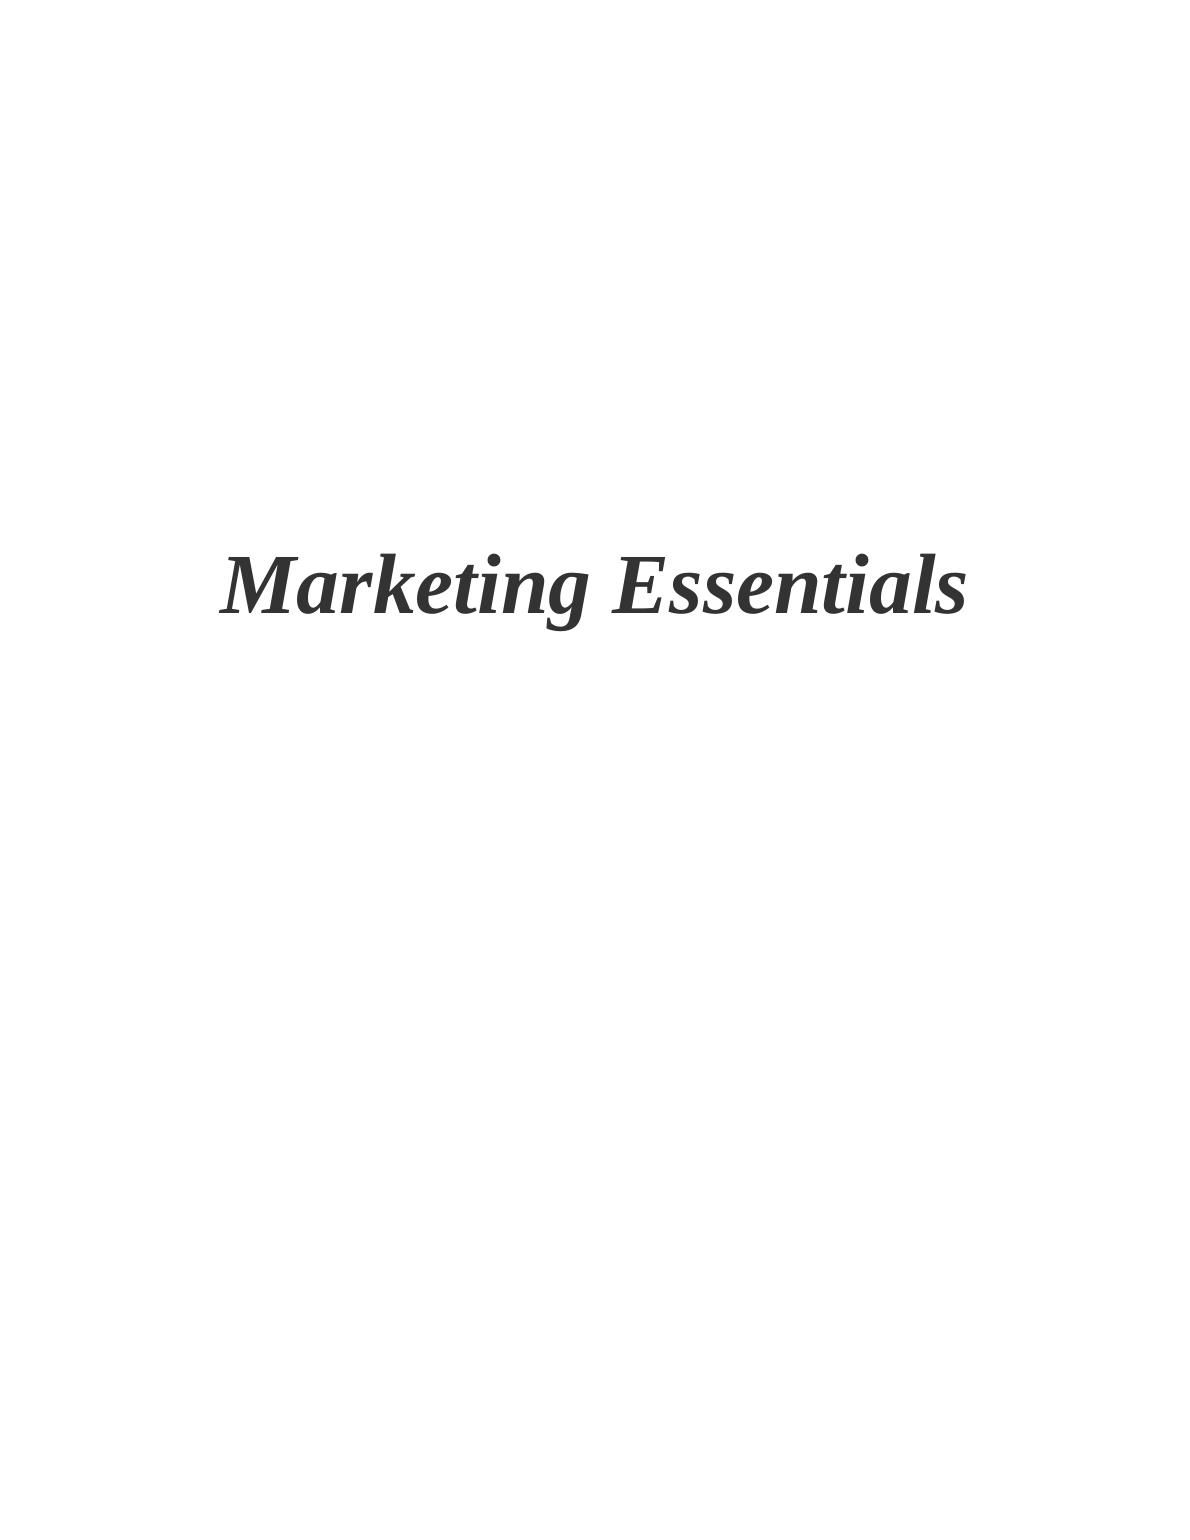 Marketing Essentials - Coca-Cola Bottlers_1